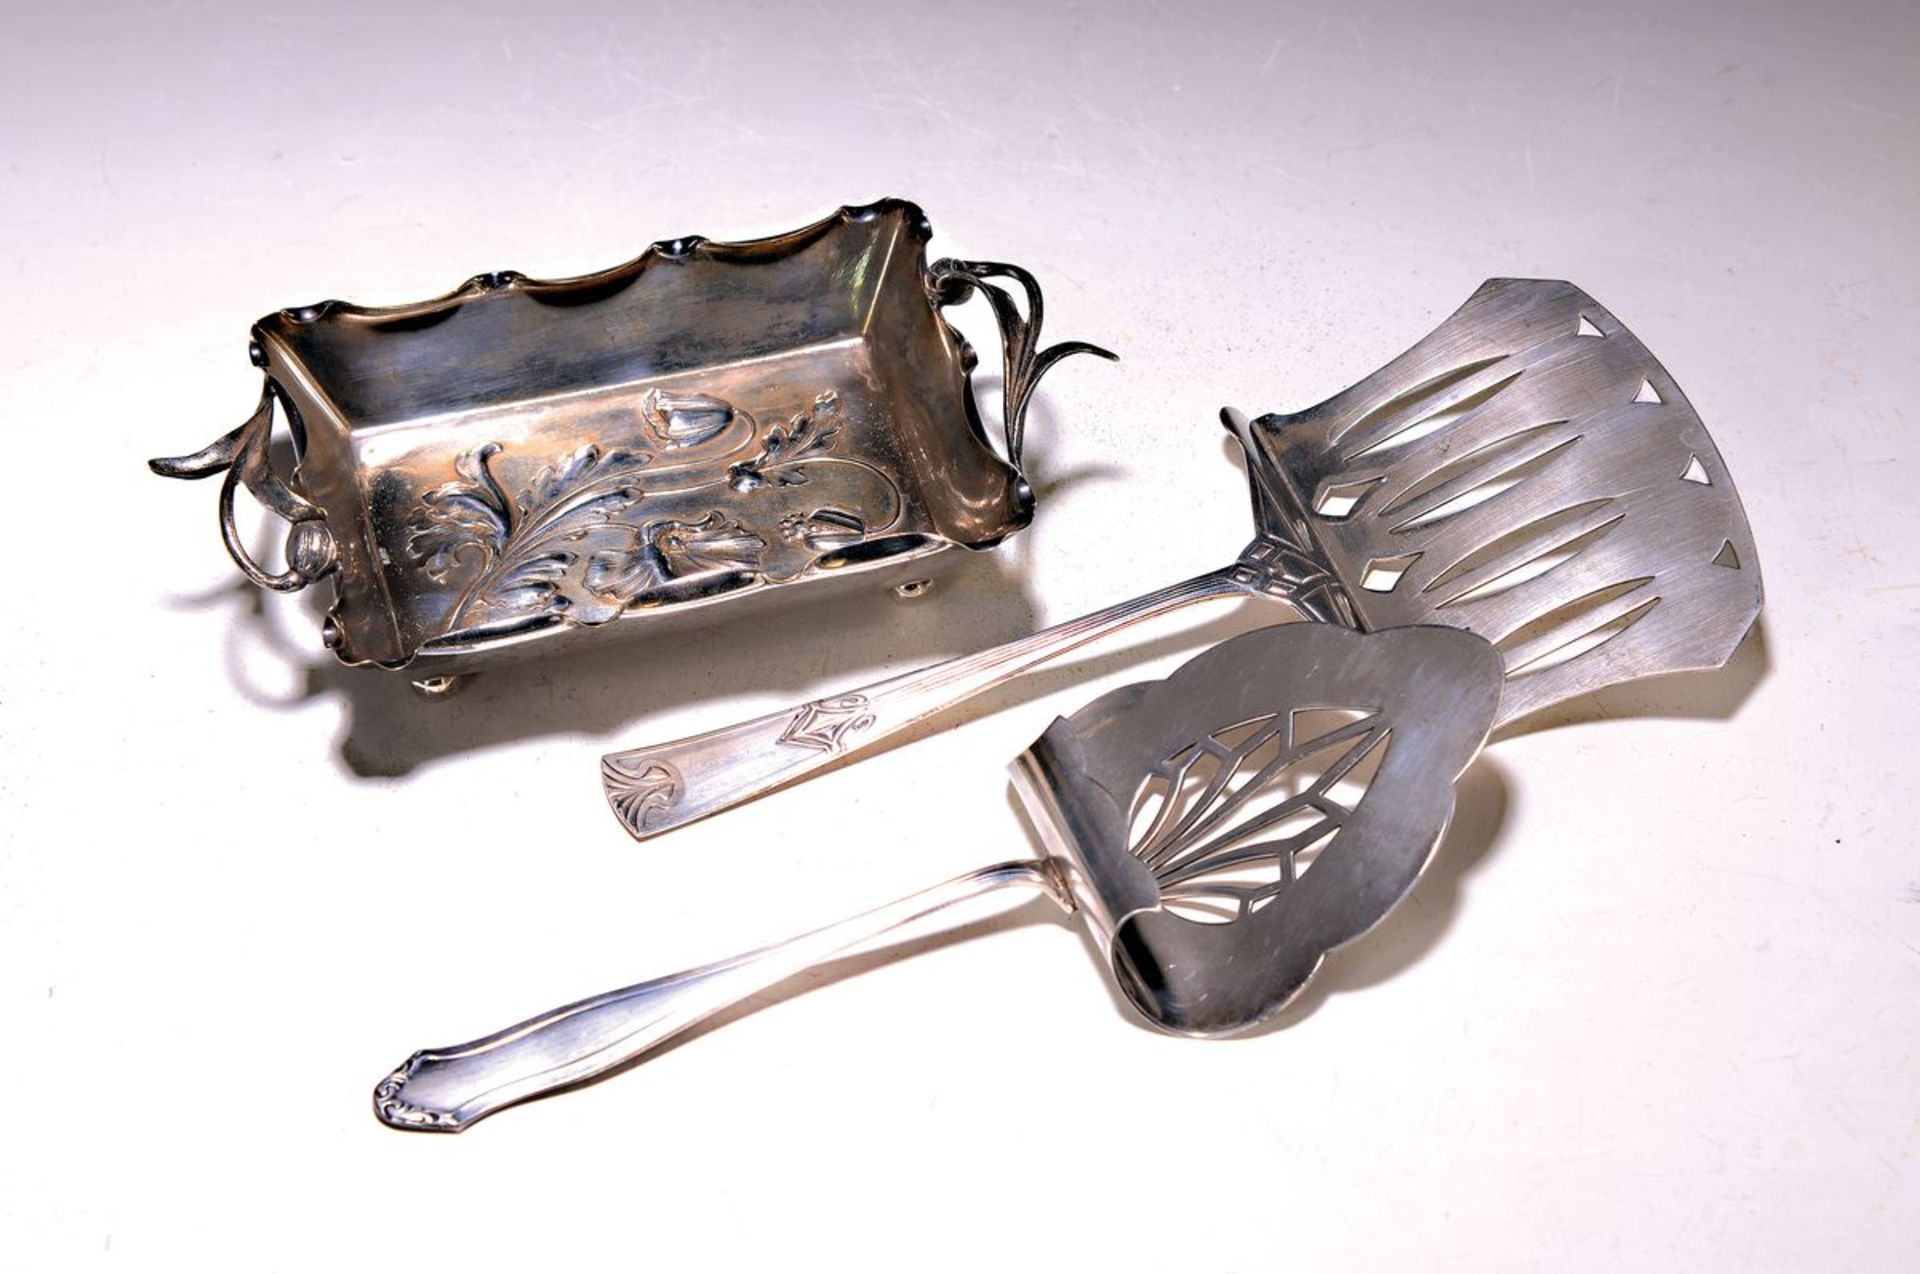 4 Teile Jugendstil, Silber/Metall, um 1900,  3 Teile WMF